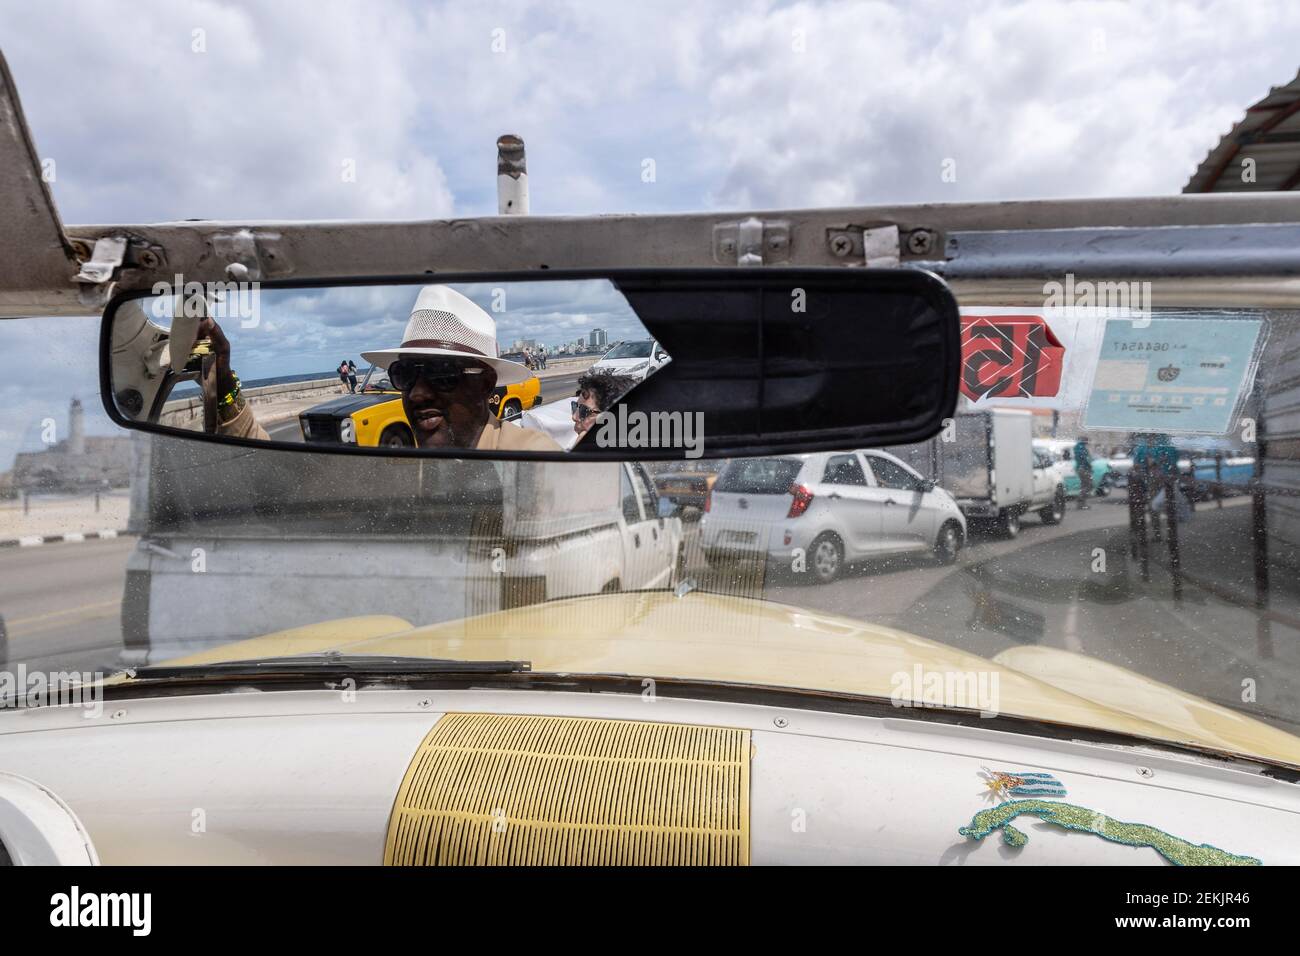 Autista di auto d'epoca con specchio retrovisore rotto, Havana, Cuba, 2017 Foto Stock